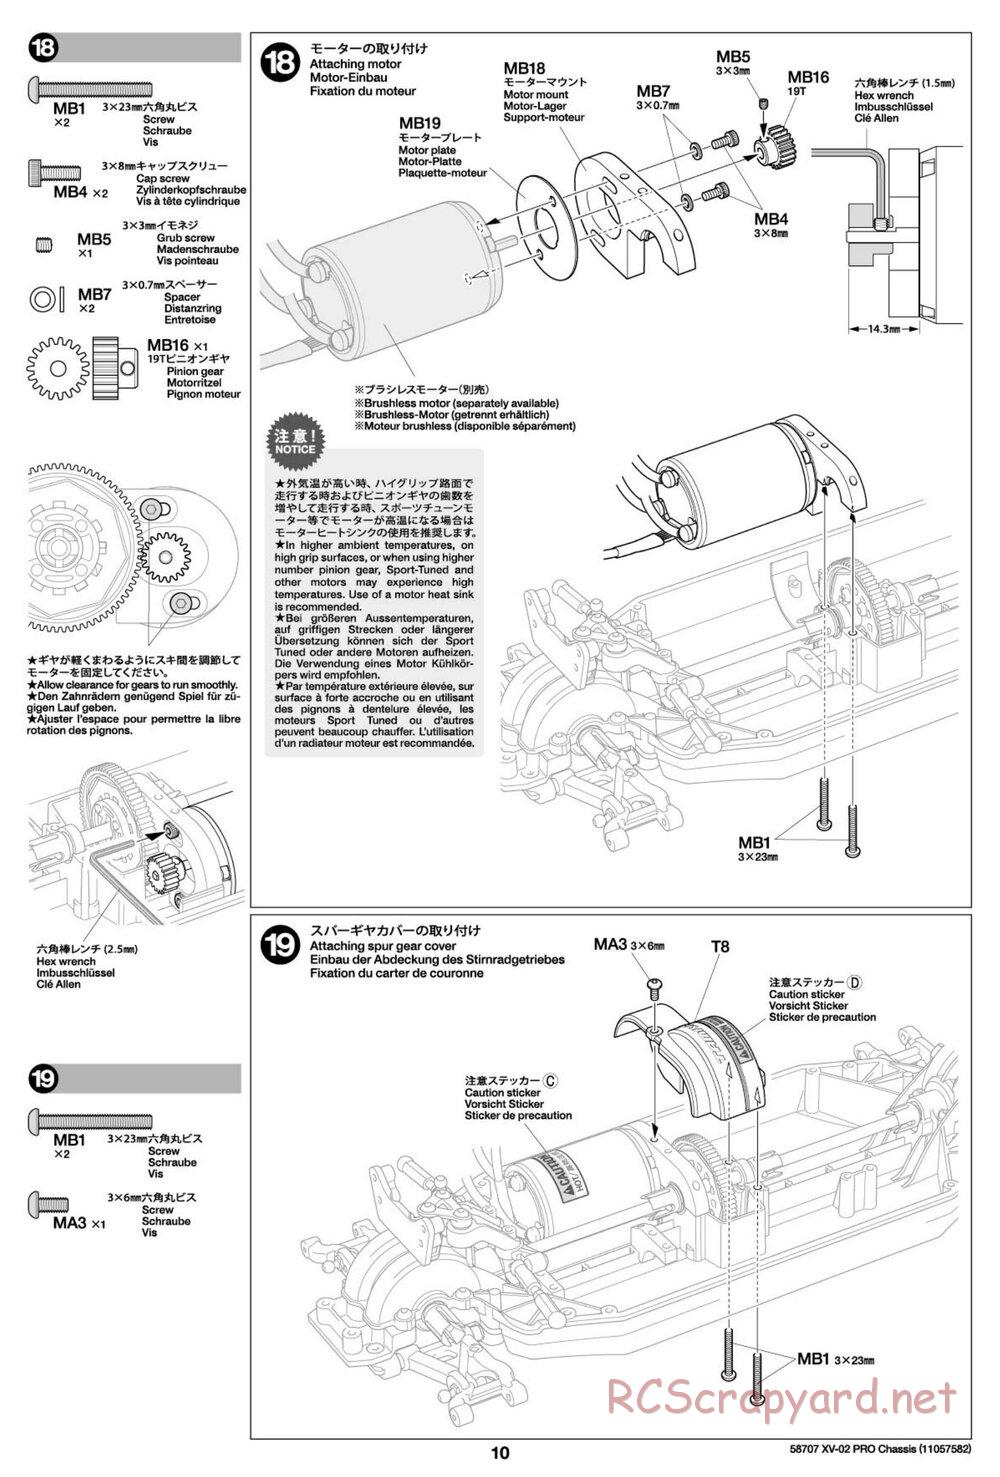 Tamiya - XV-02 Pro Chassis - Manual - Page 10